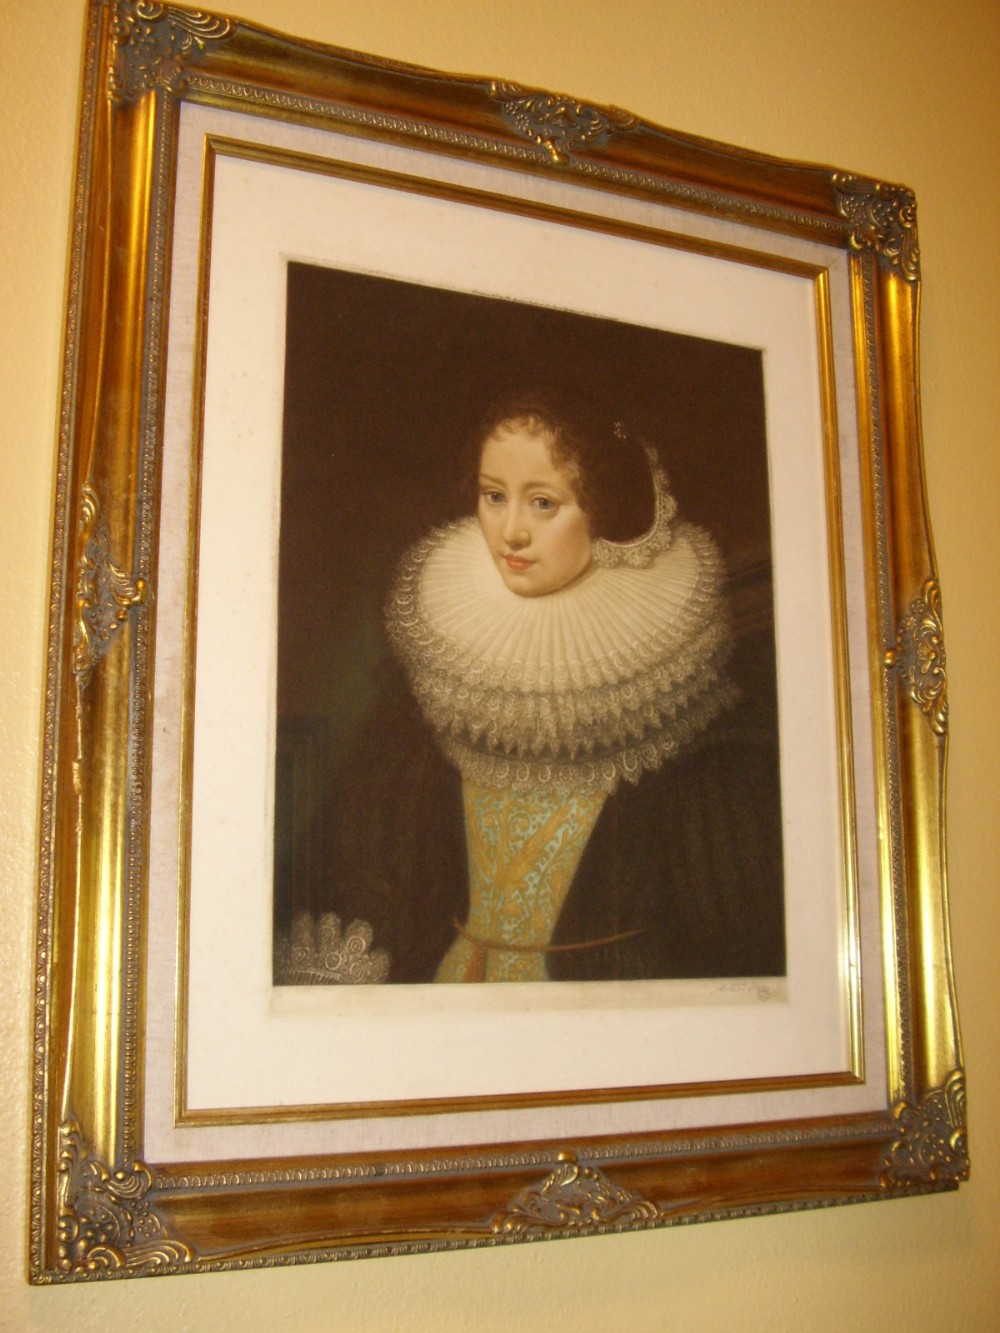 elizabethan lady portrait signed arthur hogg mezzotint engraving c1929